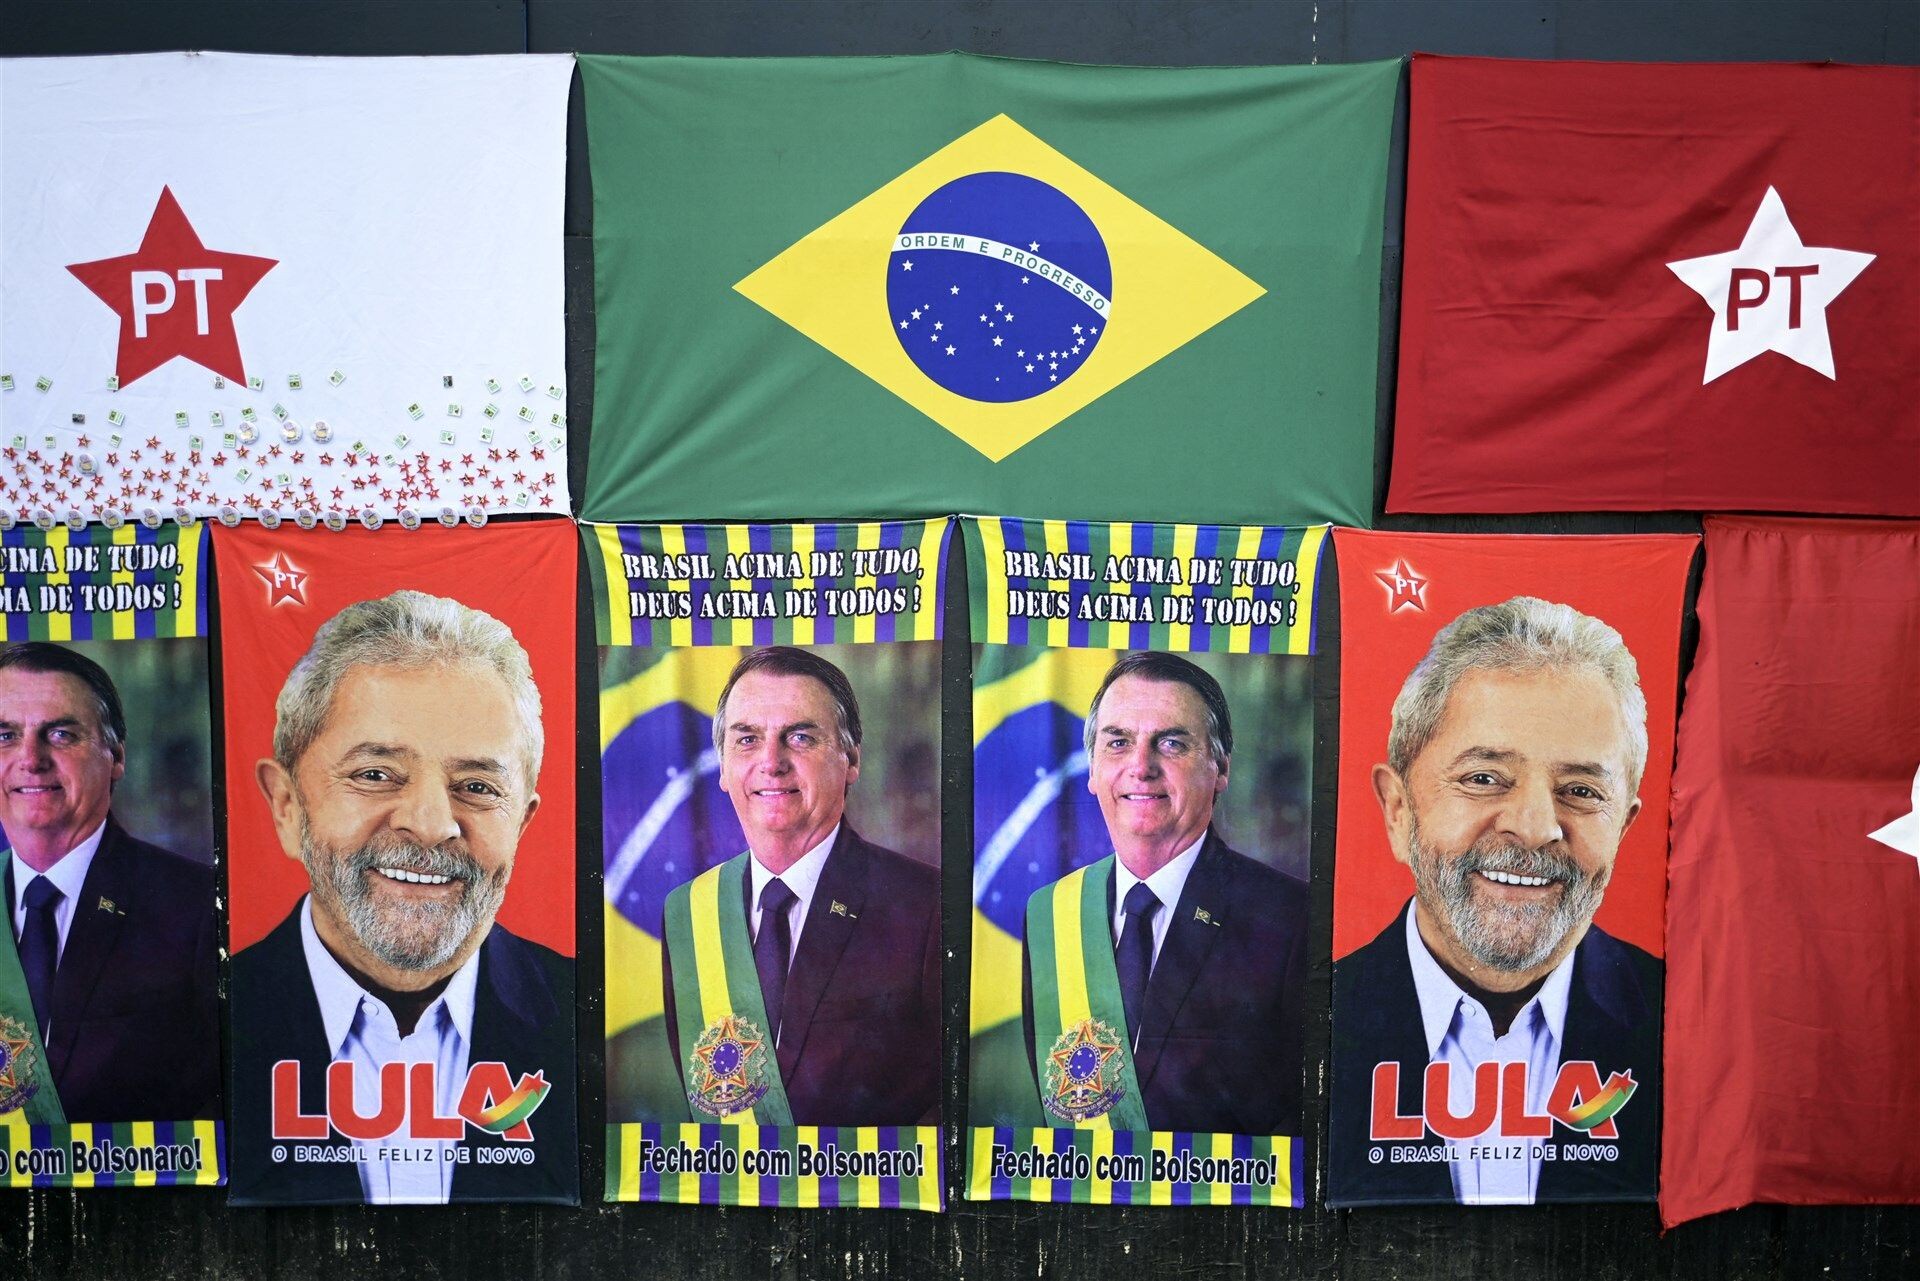 Spannende verkiezingen in Brazilië